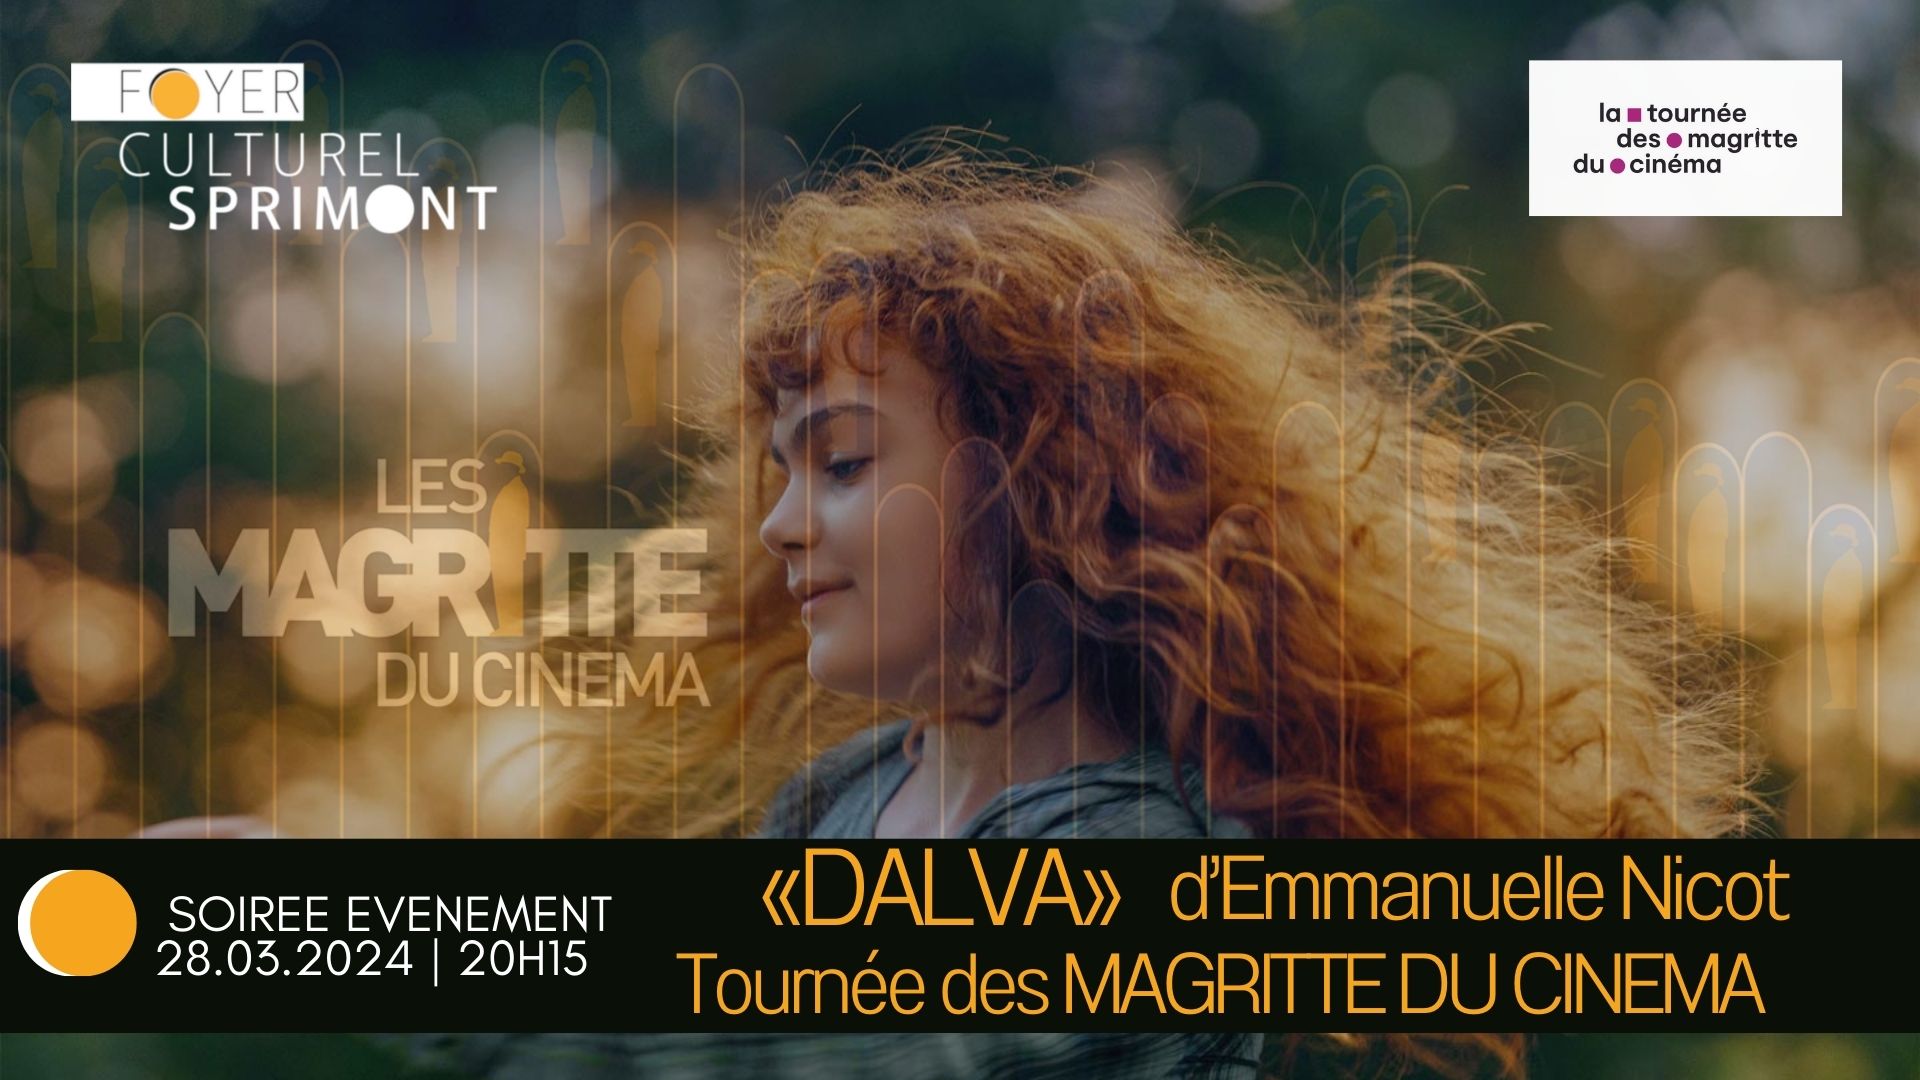 Tournée des MAGRITTE DU CINEMA - DALVA d'Emmanuel NICOT au Foyer culturel de Sprimont